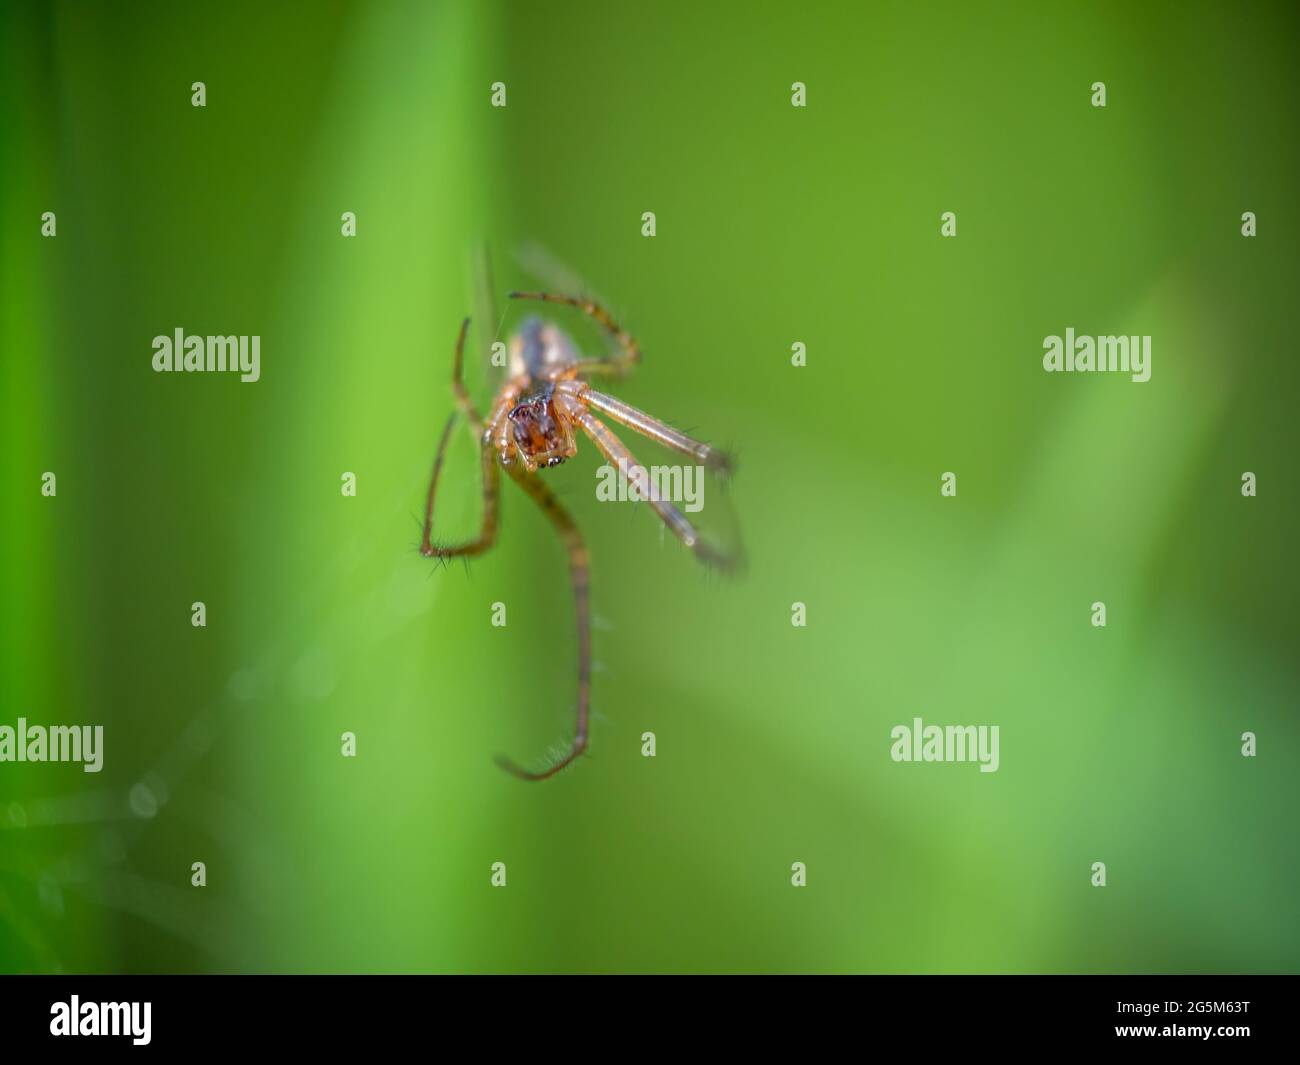 Exosquelette molé d'une araignée, macro. Faible profondeur de champ avec mise au point sur les yeux. Banque D'Images